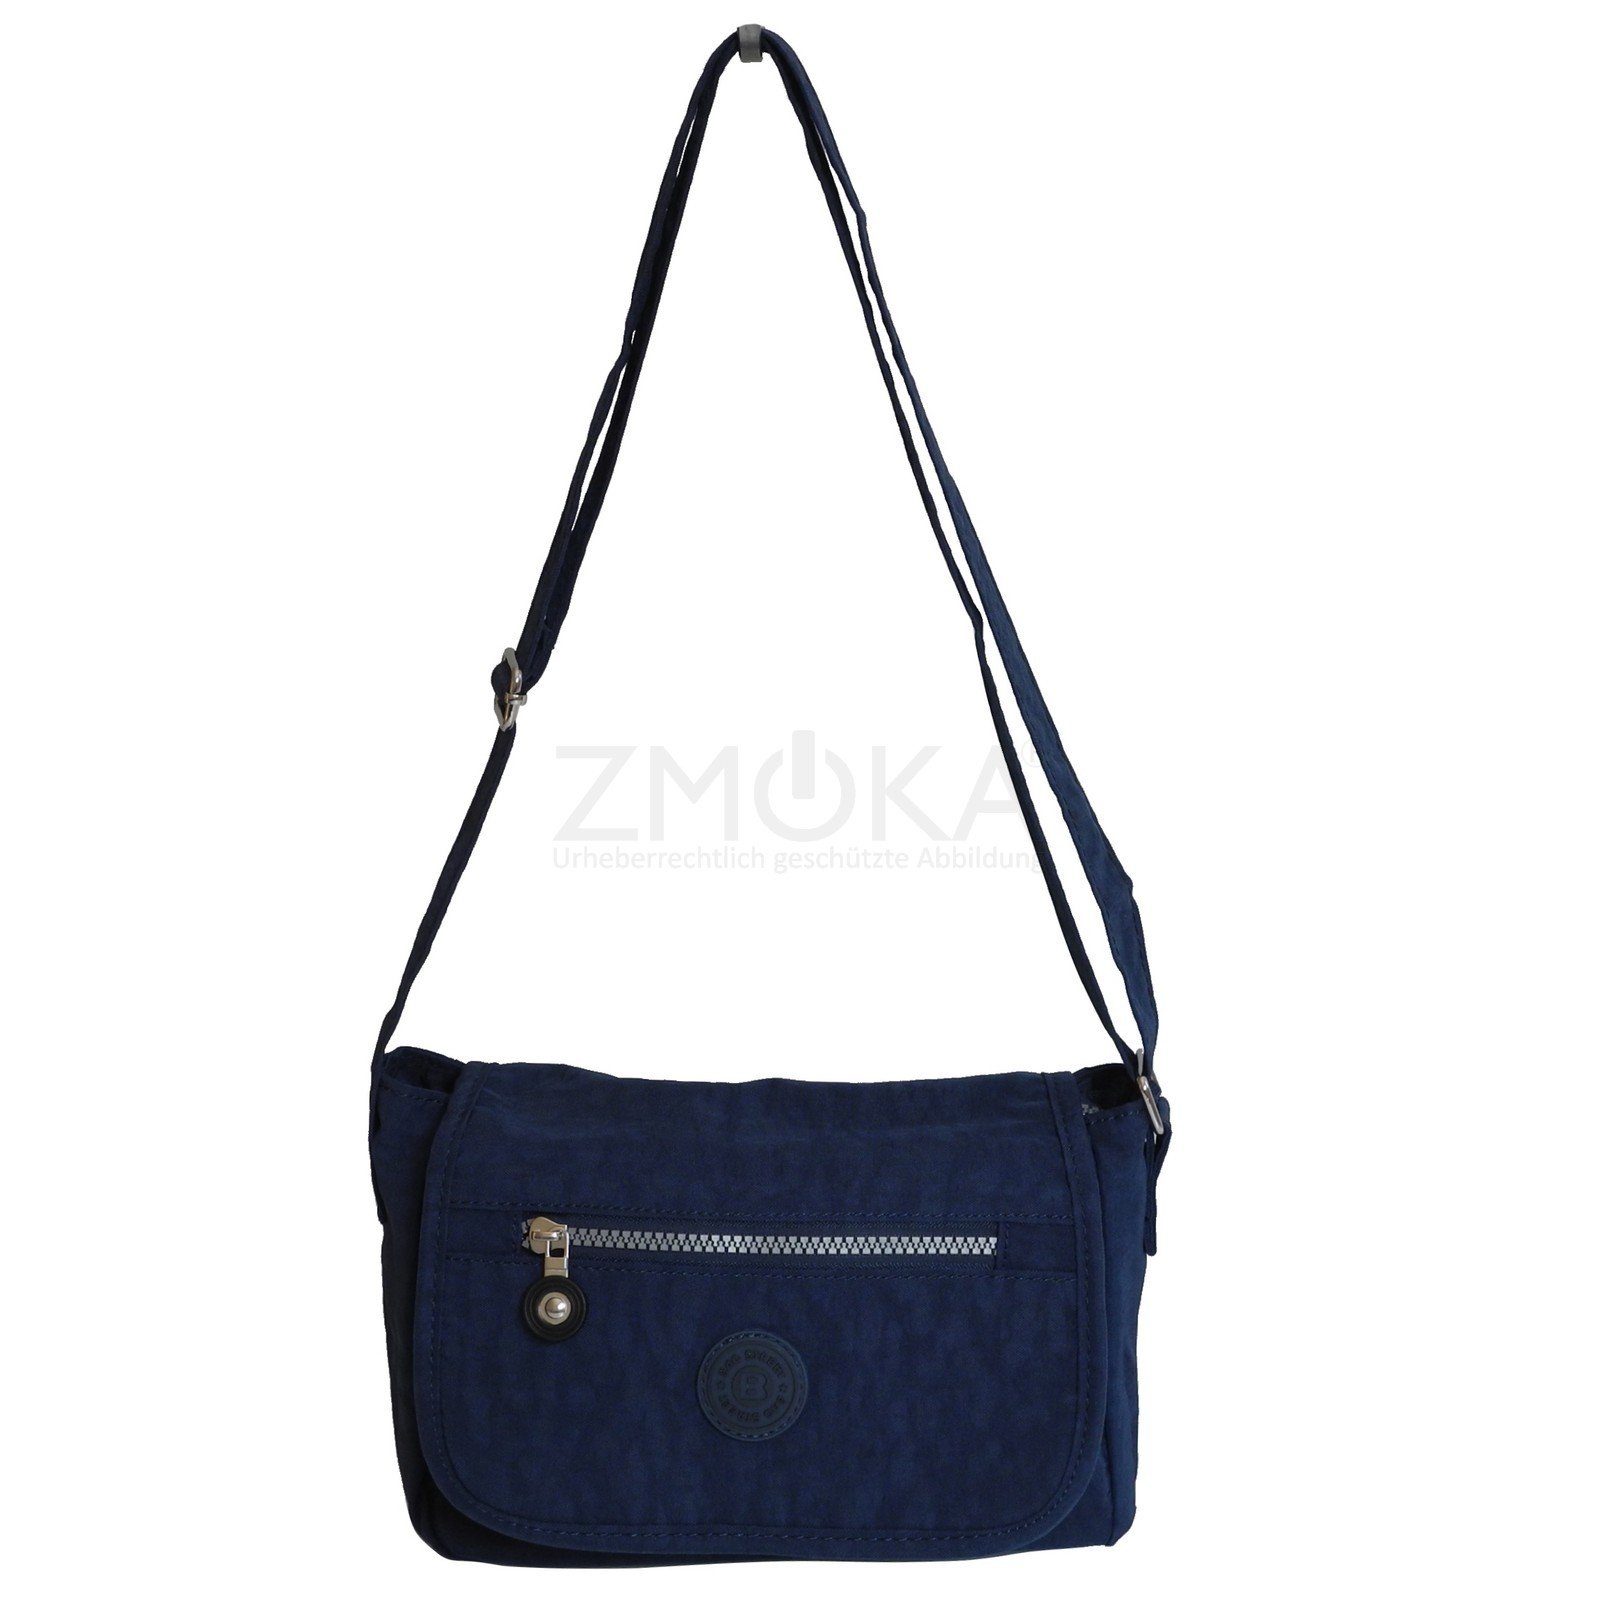 Bag Handtasche Auswah Damen Crinkle Umhängetasche BAG Navy STREET Umhängetasche Stofftasche Street -